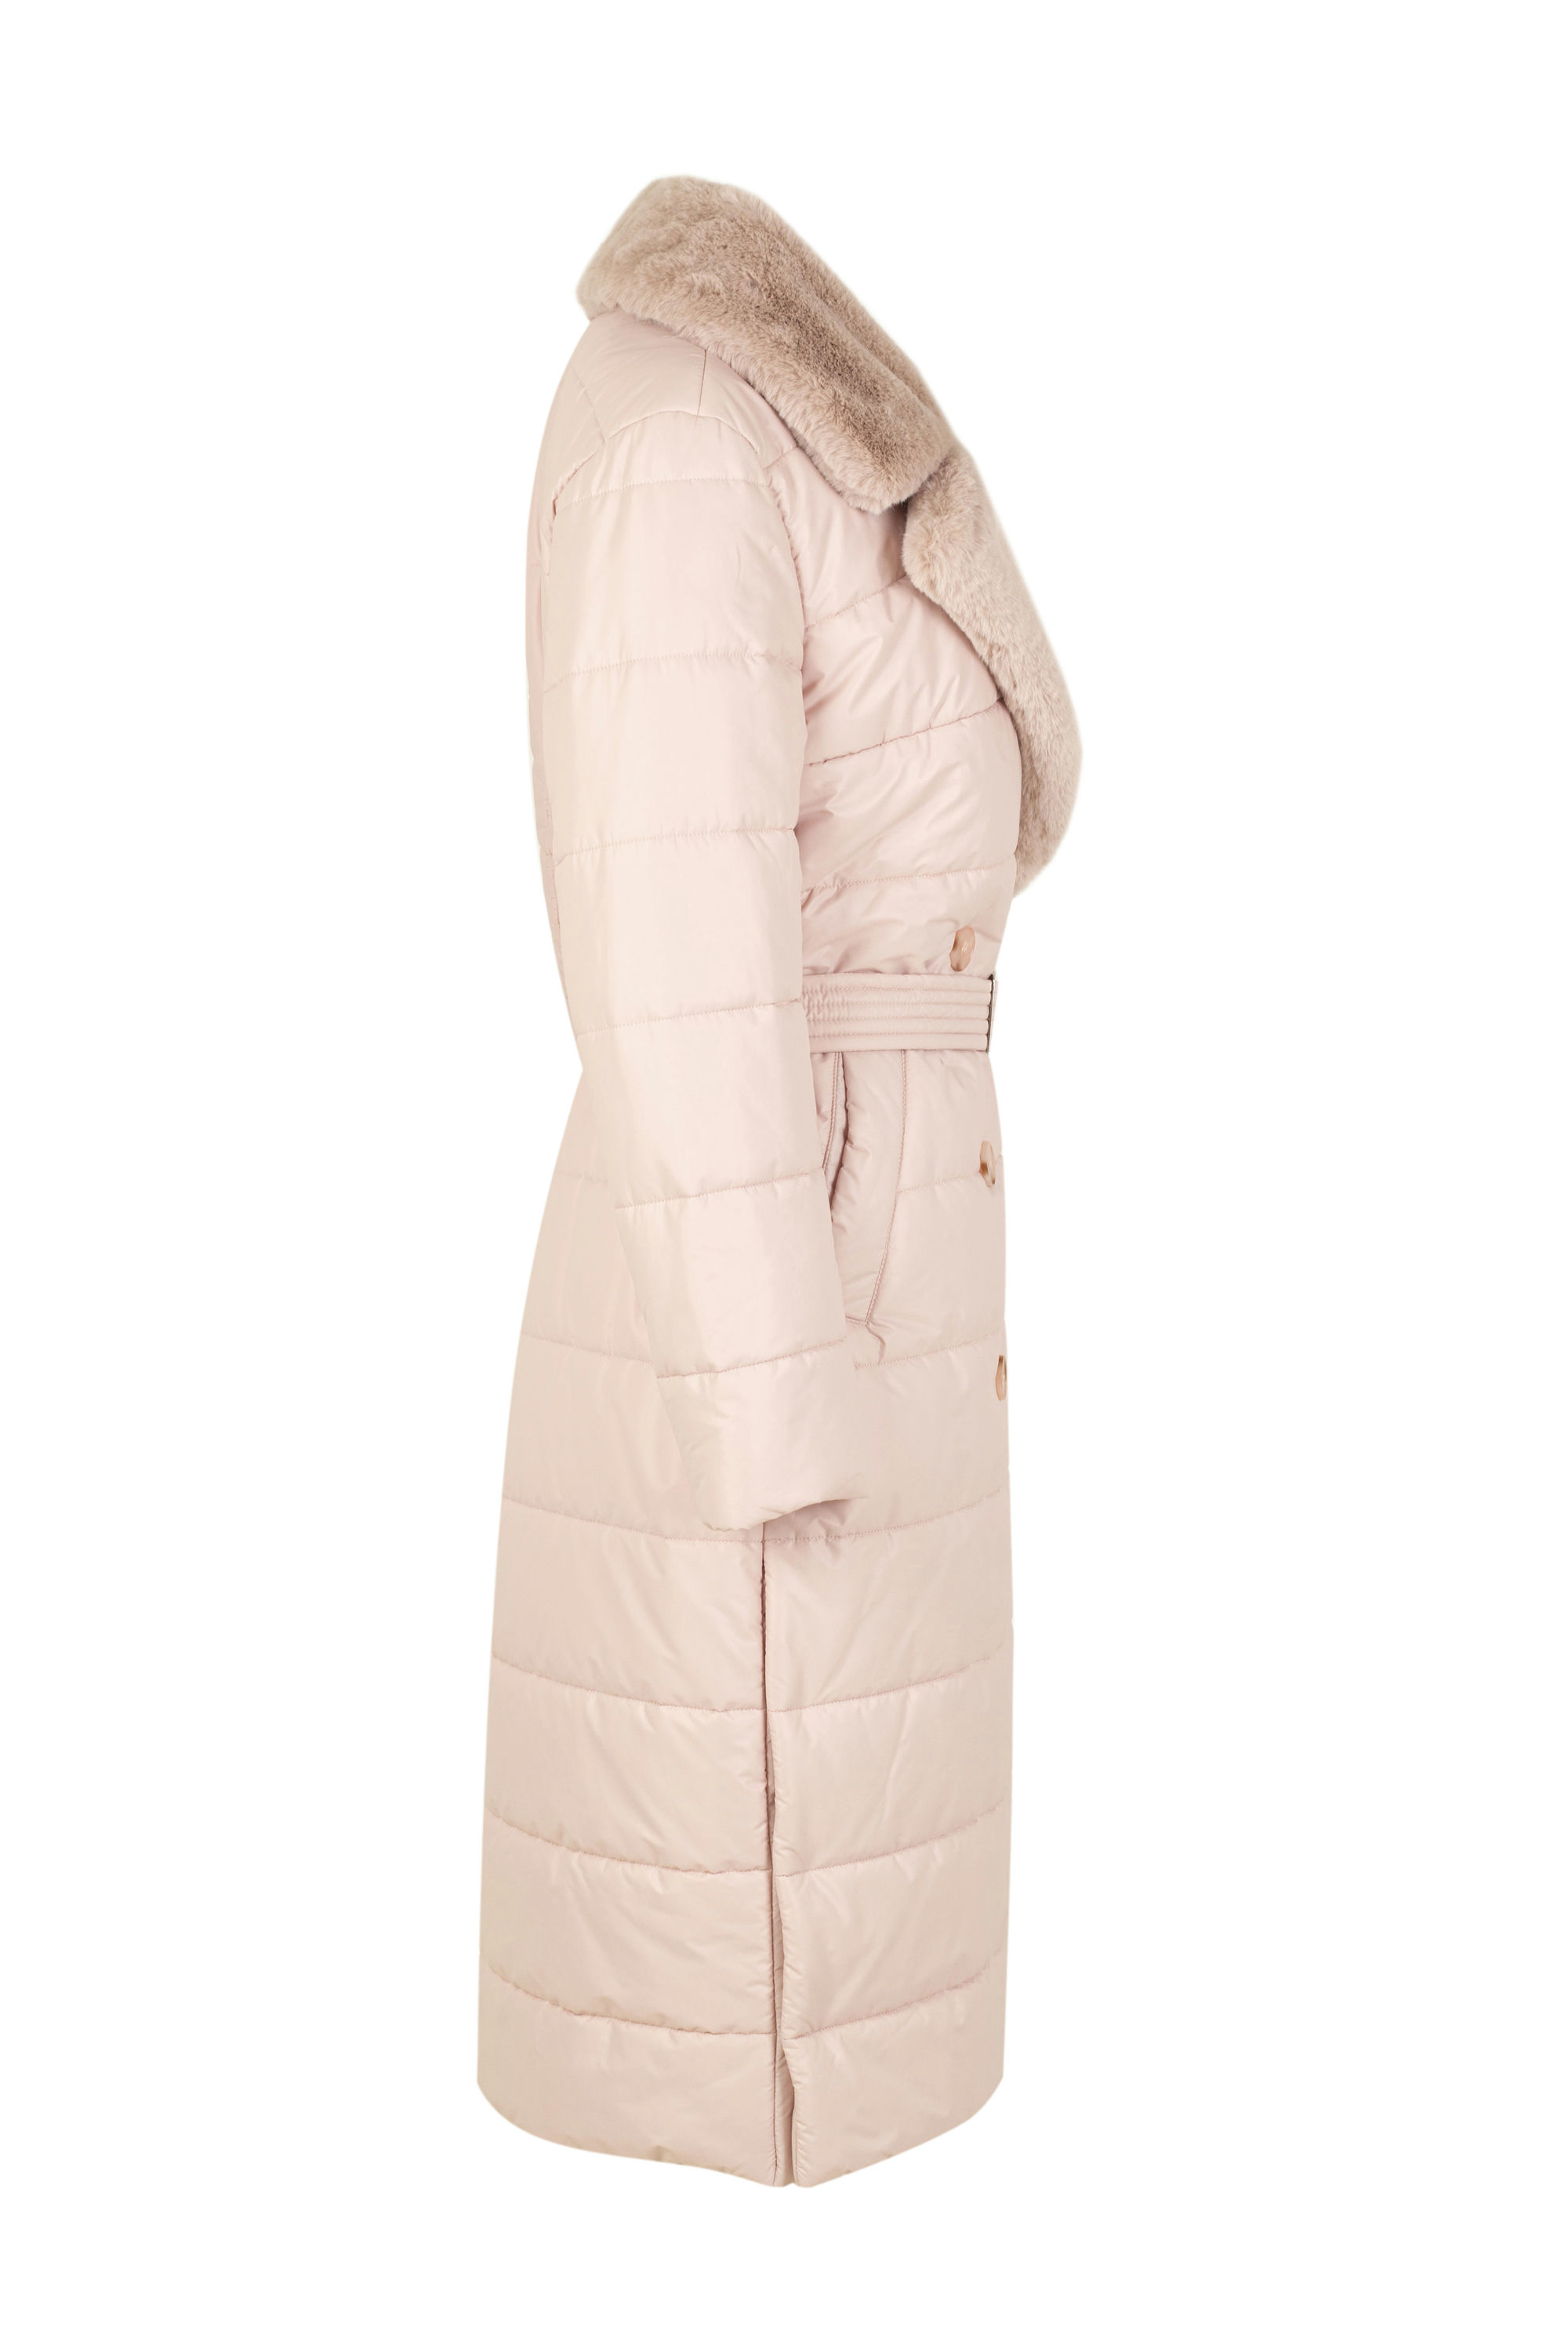 Пальто женское плащевое утепленное 5S-13038-1. Фото 2.